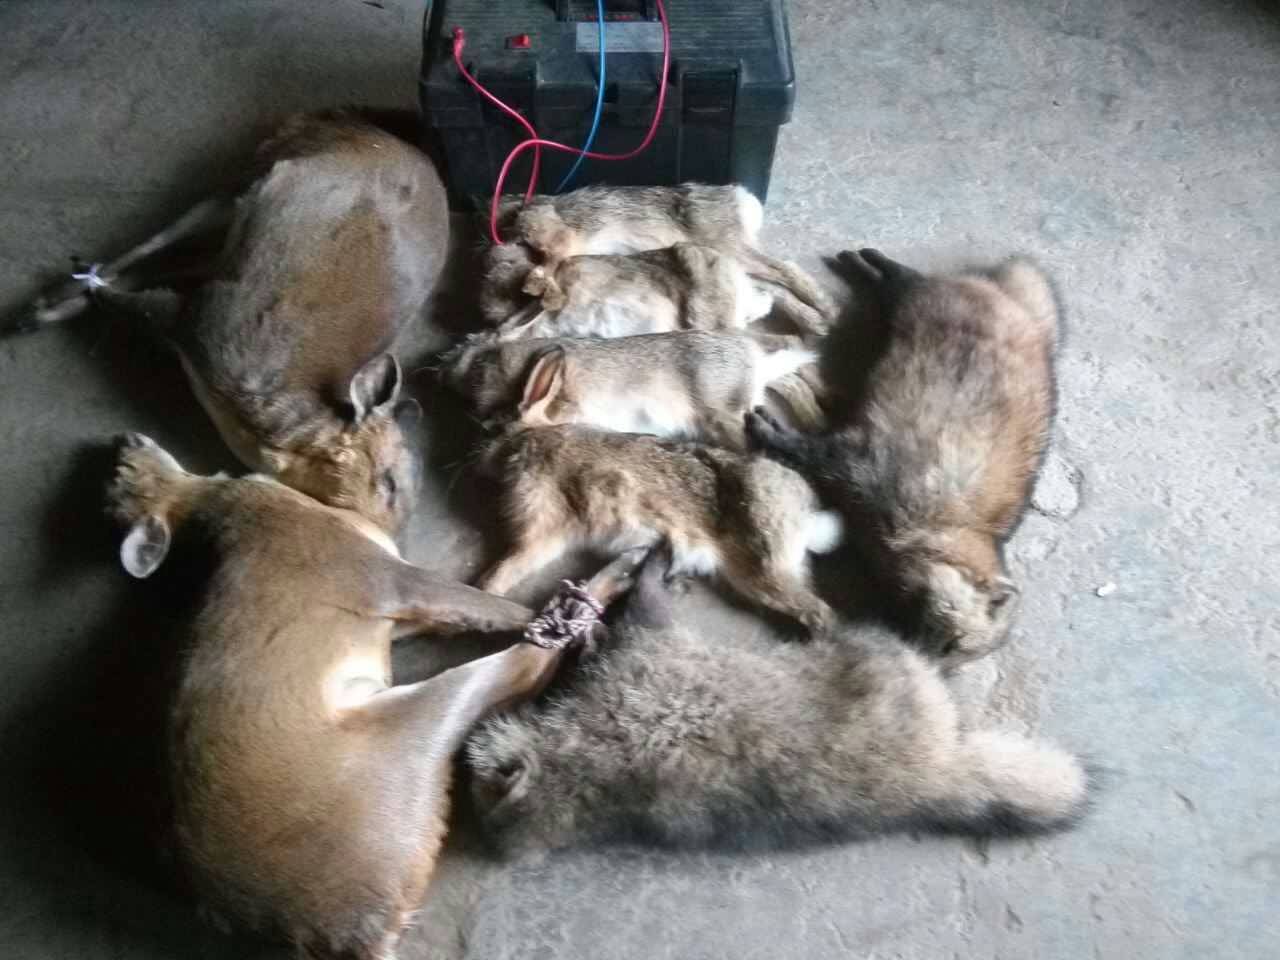 内蒙古自治区鄂尔多斯市捕猎机器安全高效一晚上捕捉10头野猪